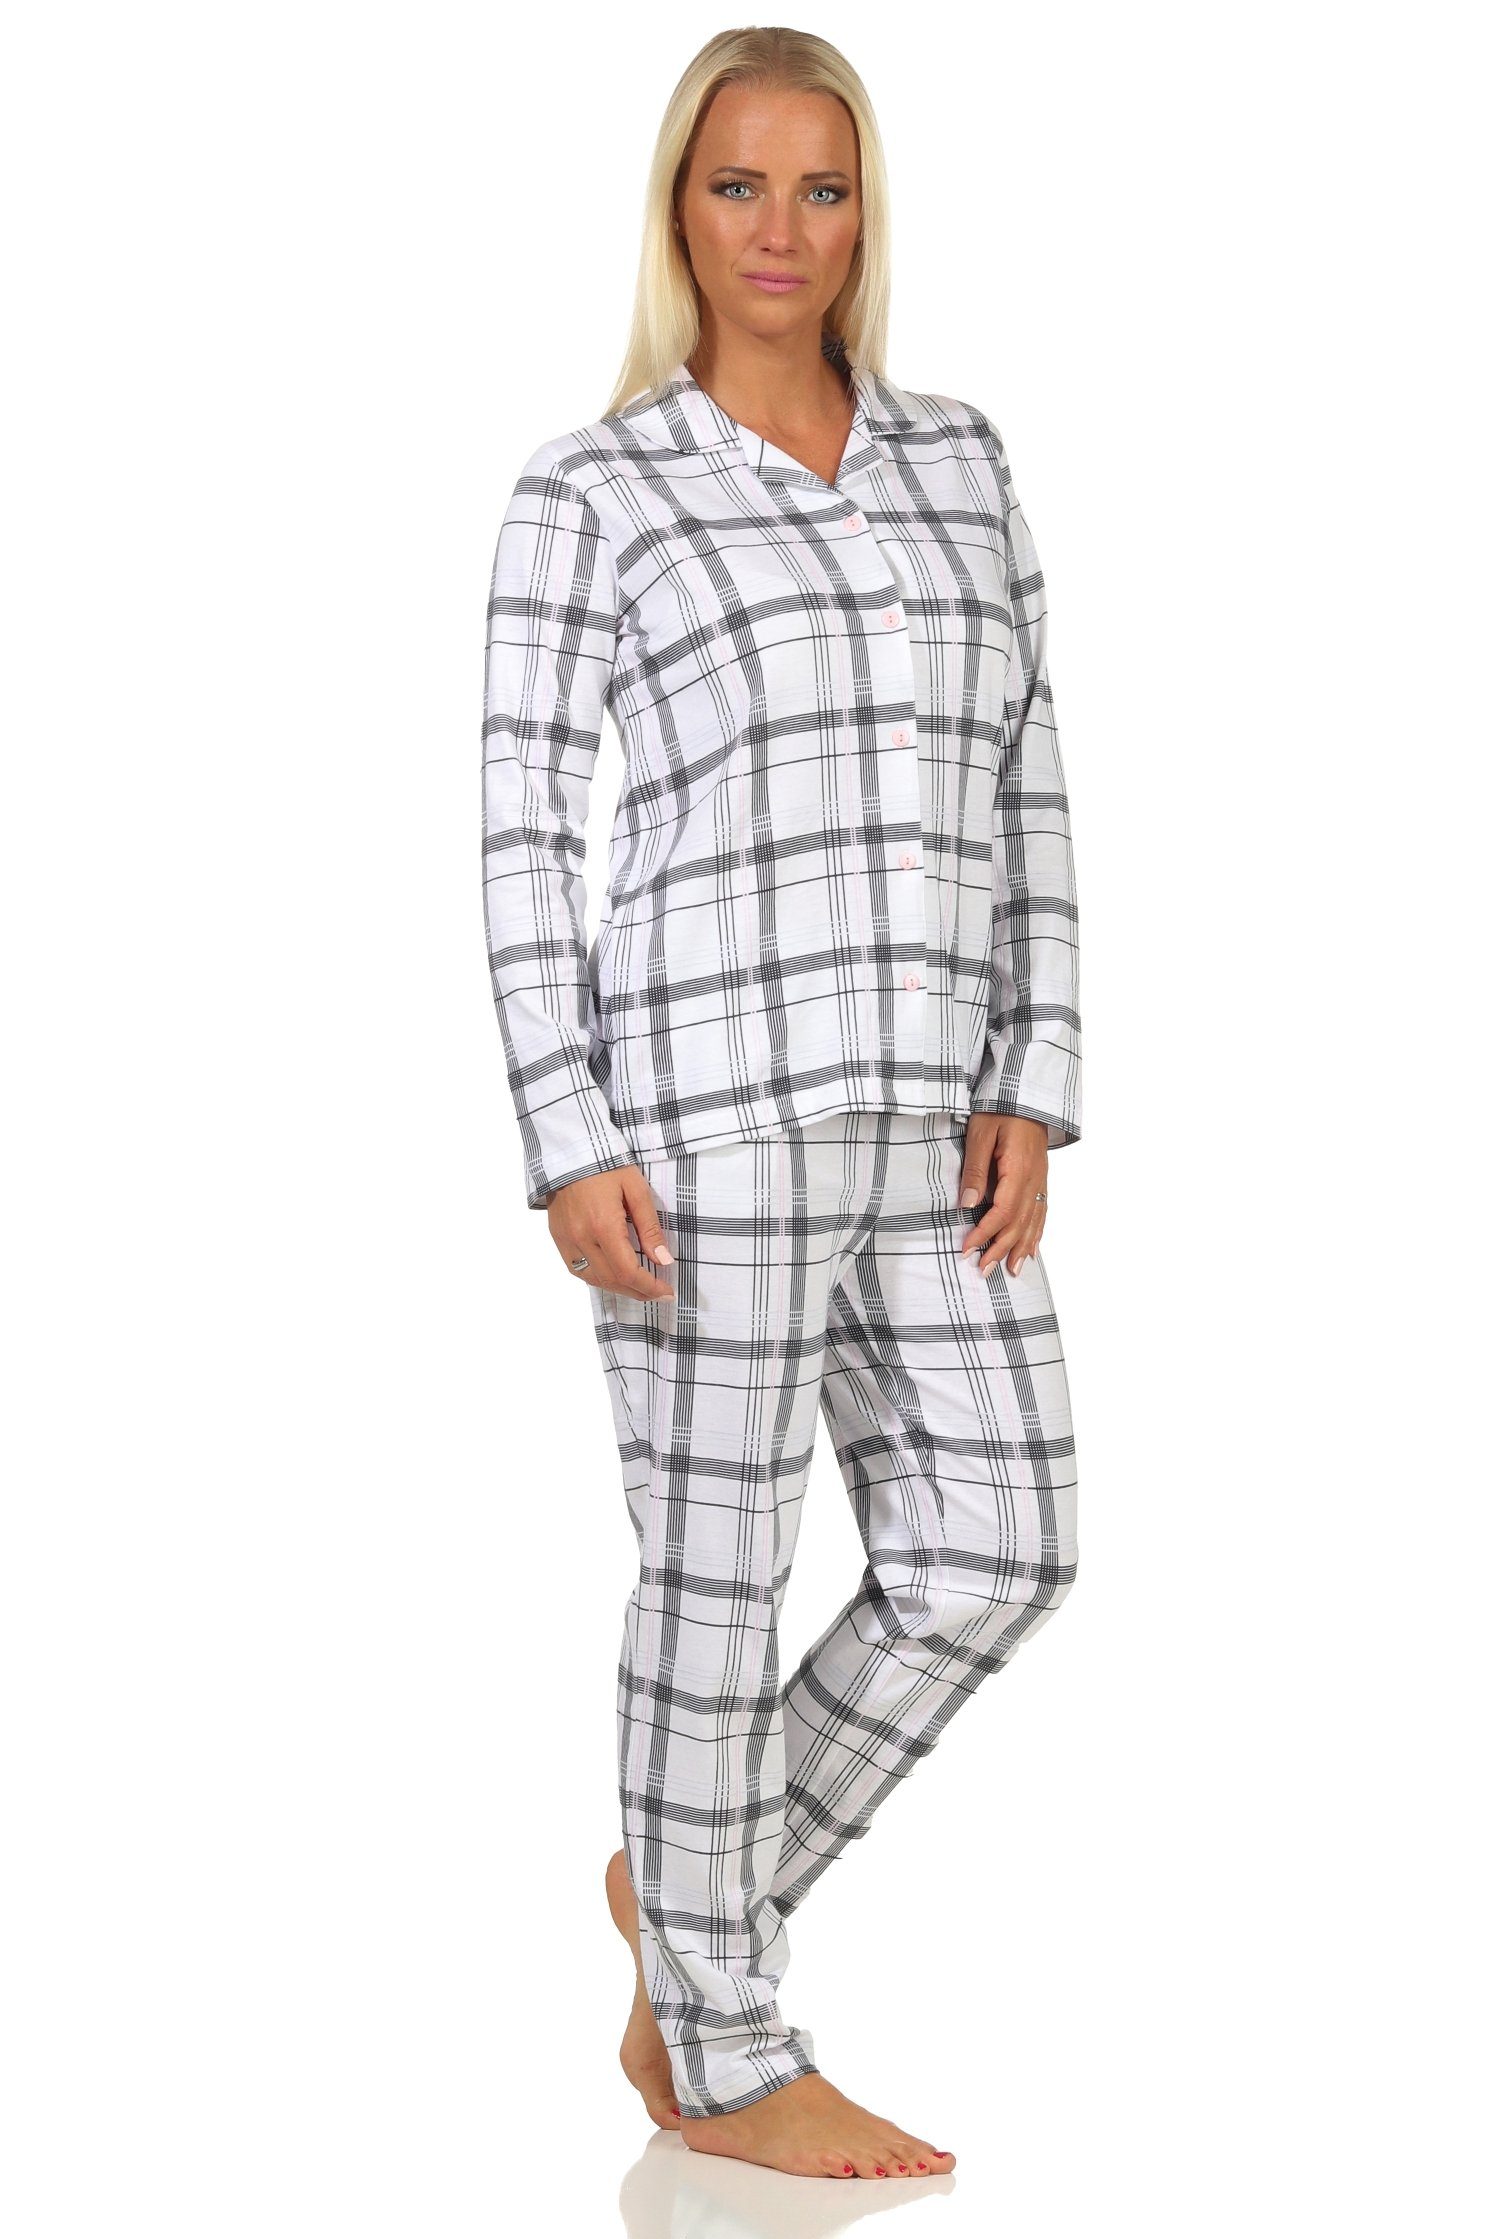 Jersey Karo Optik in durchknöpfen Normann Qualität Schlafanzug Damen Pyjama in zum